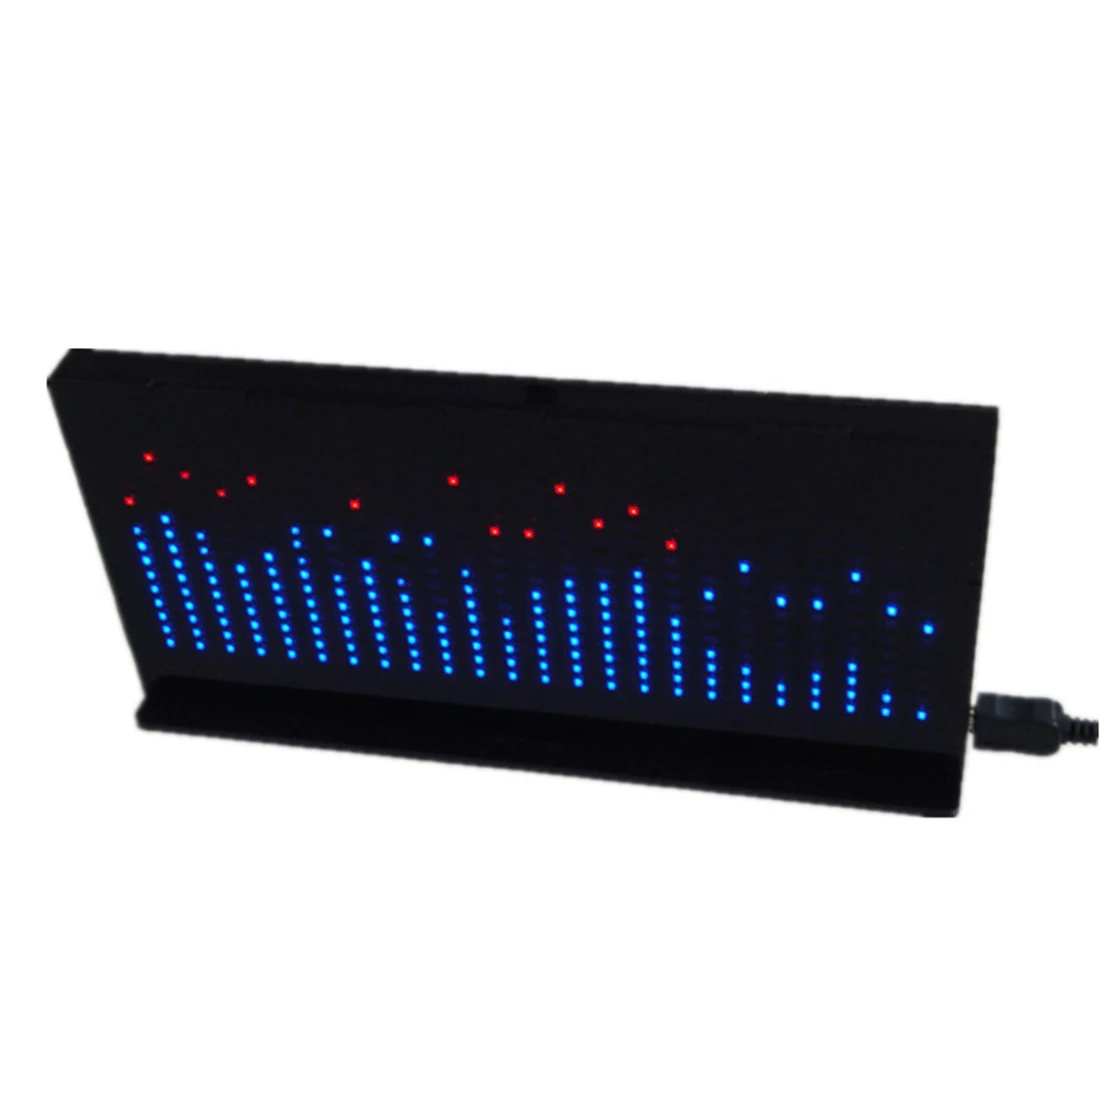 Lumière à assembler soi-même Cube Kit AS1424 musique spectre LED affichage amplificateur Audio Modification rythme lampe-produit fini noir